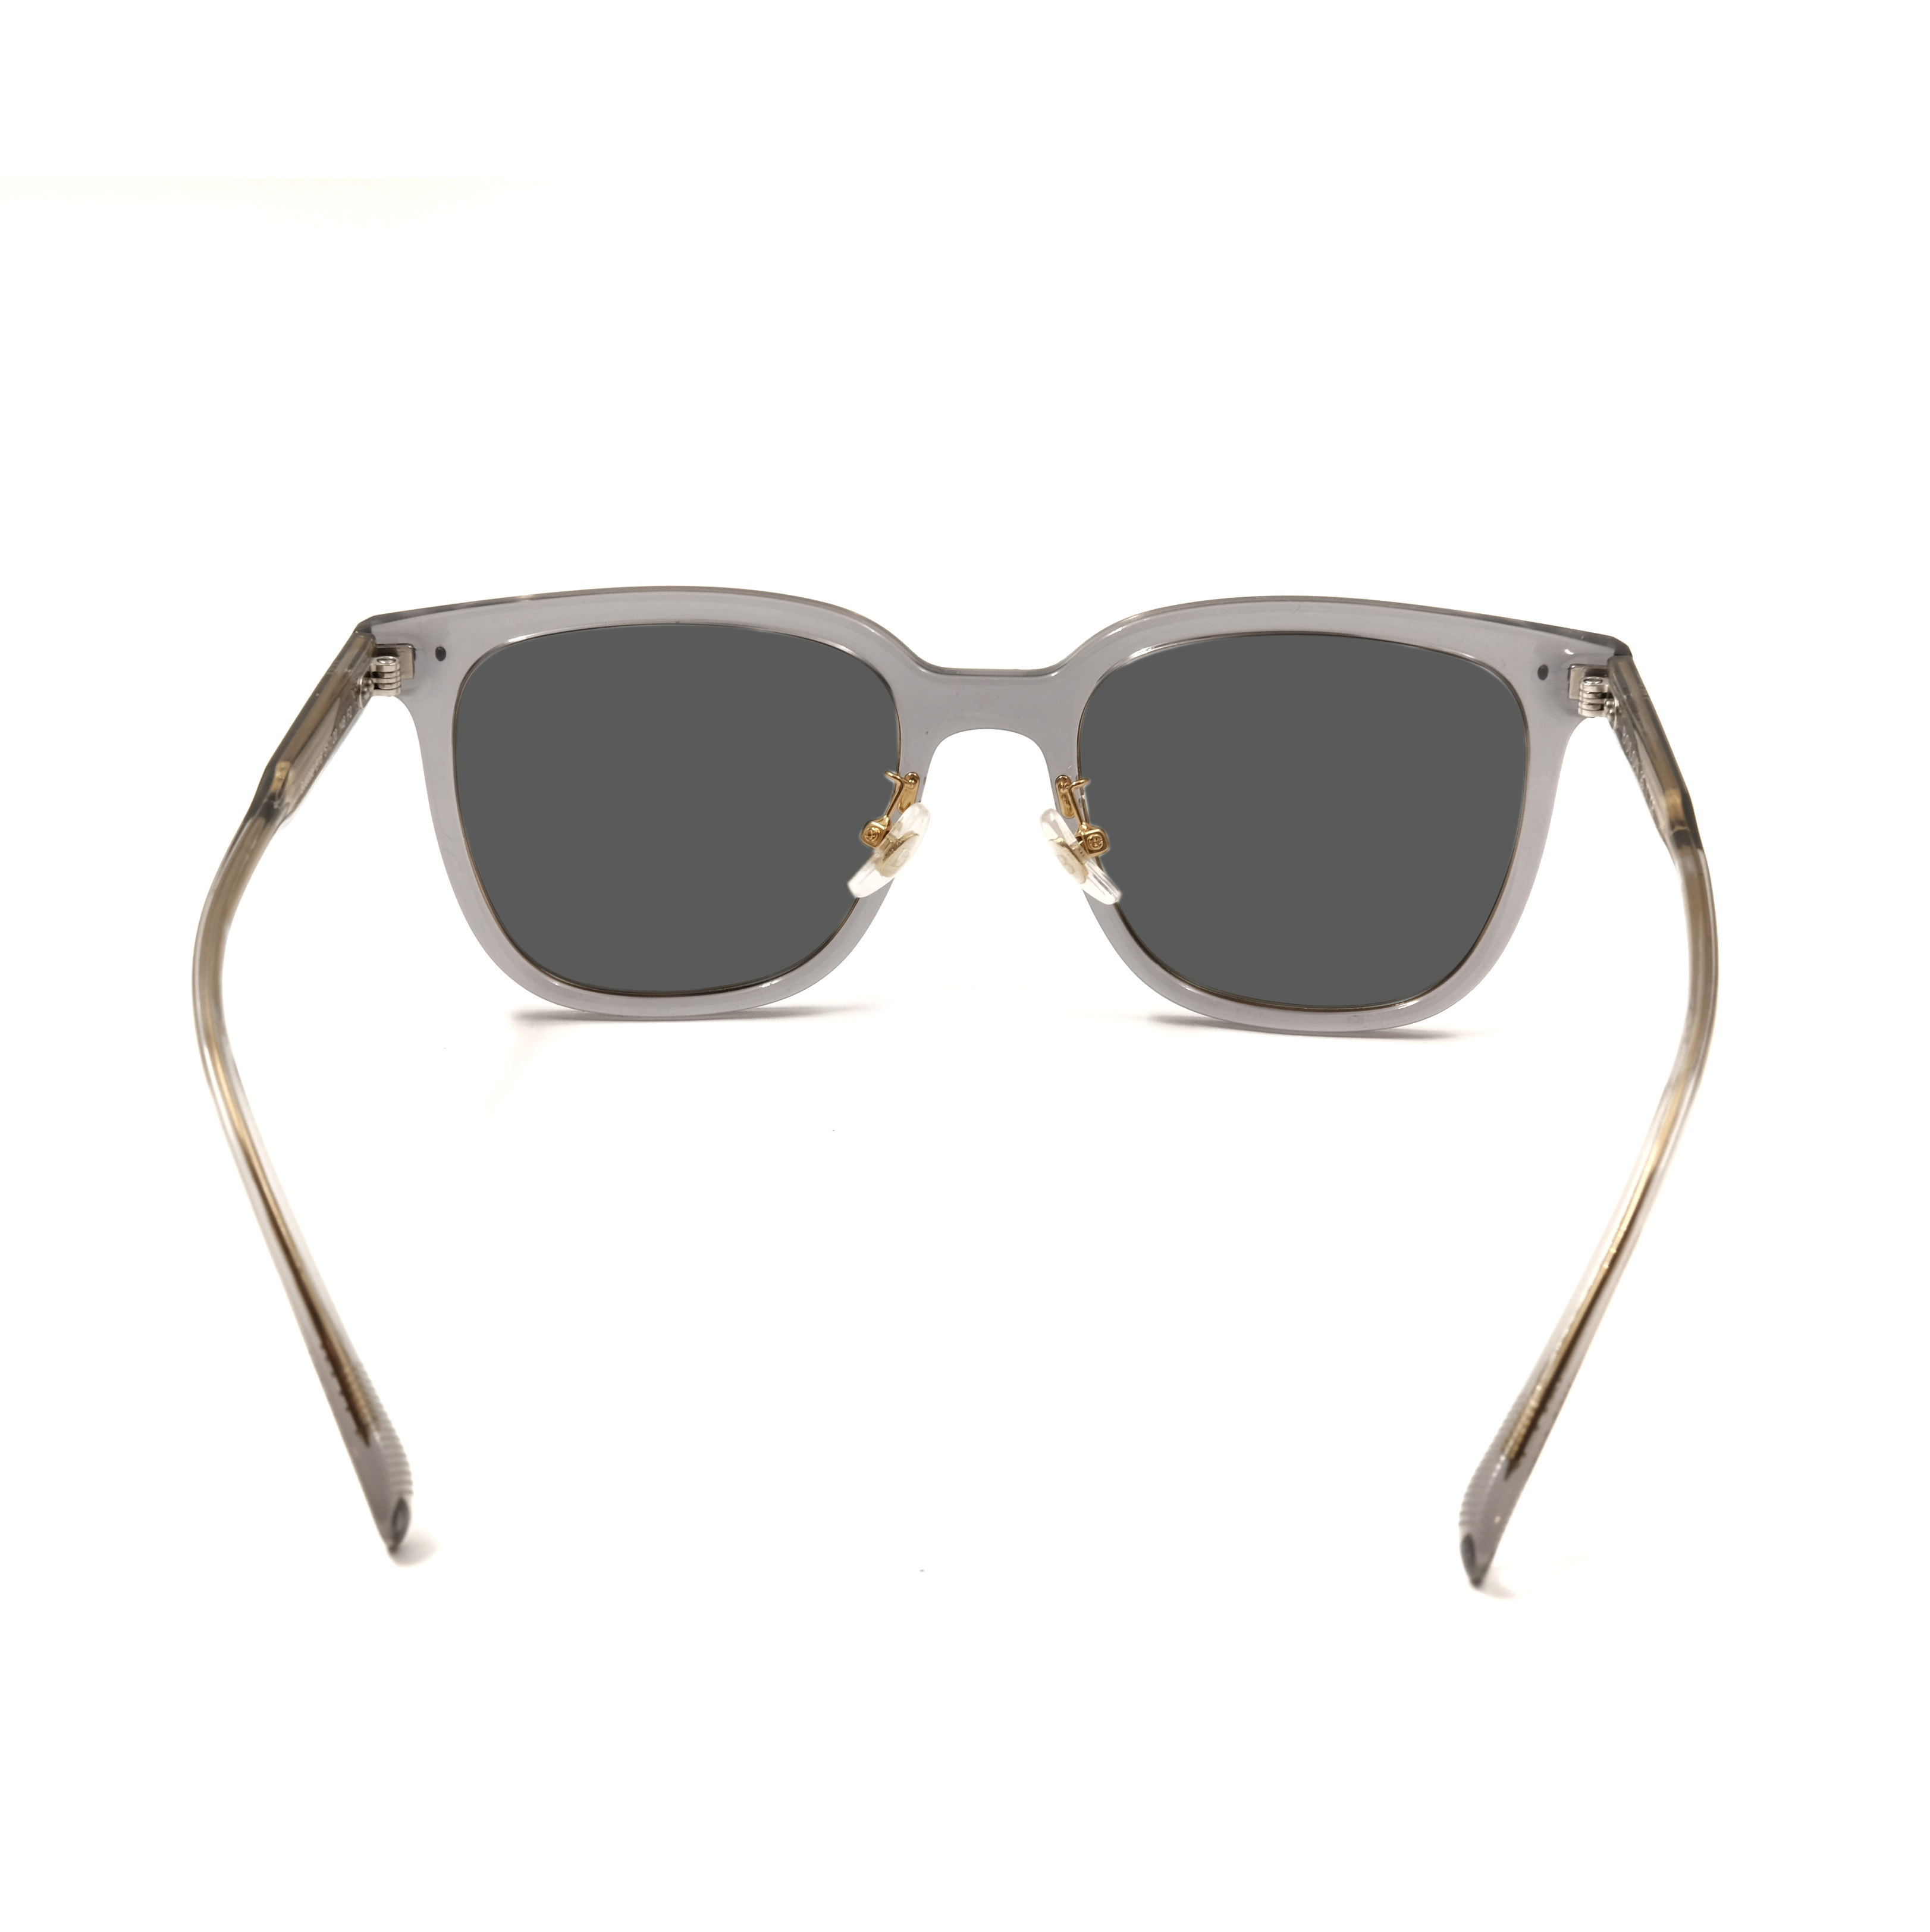 Gafas de sol cuadradas de acetato gris Gafas de sol polarizadas personalizadas Los mejores fabricantes de gafas